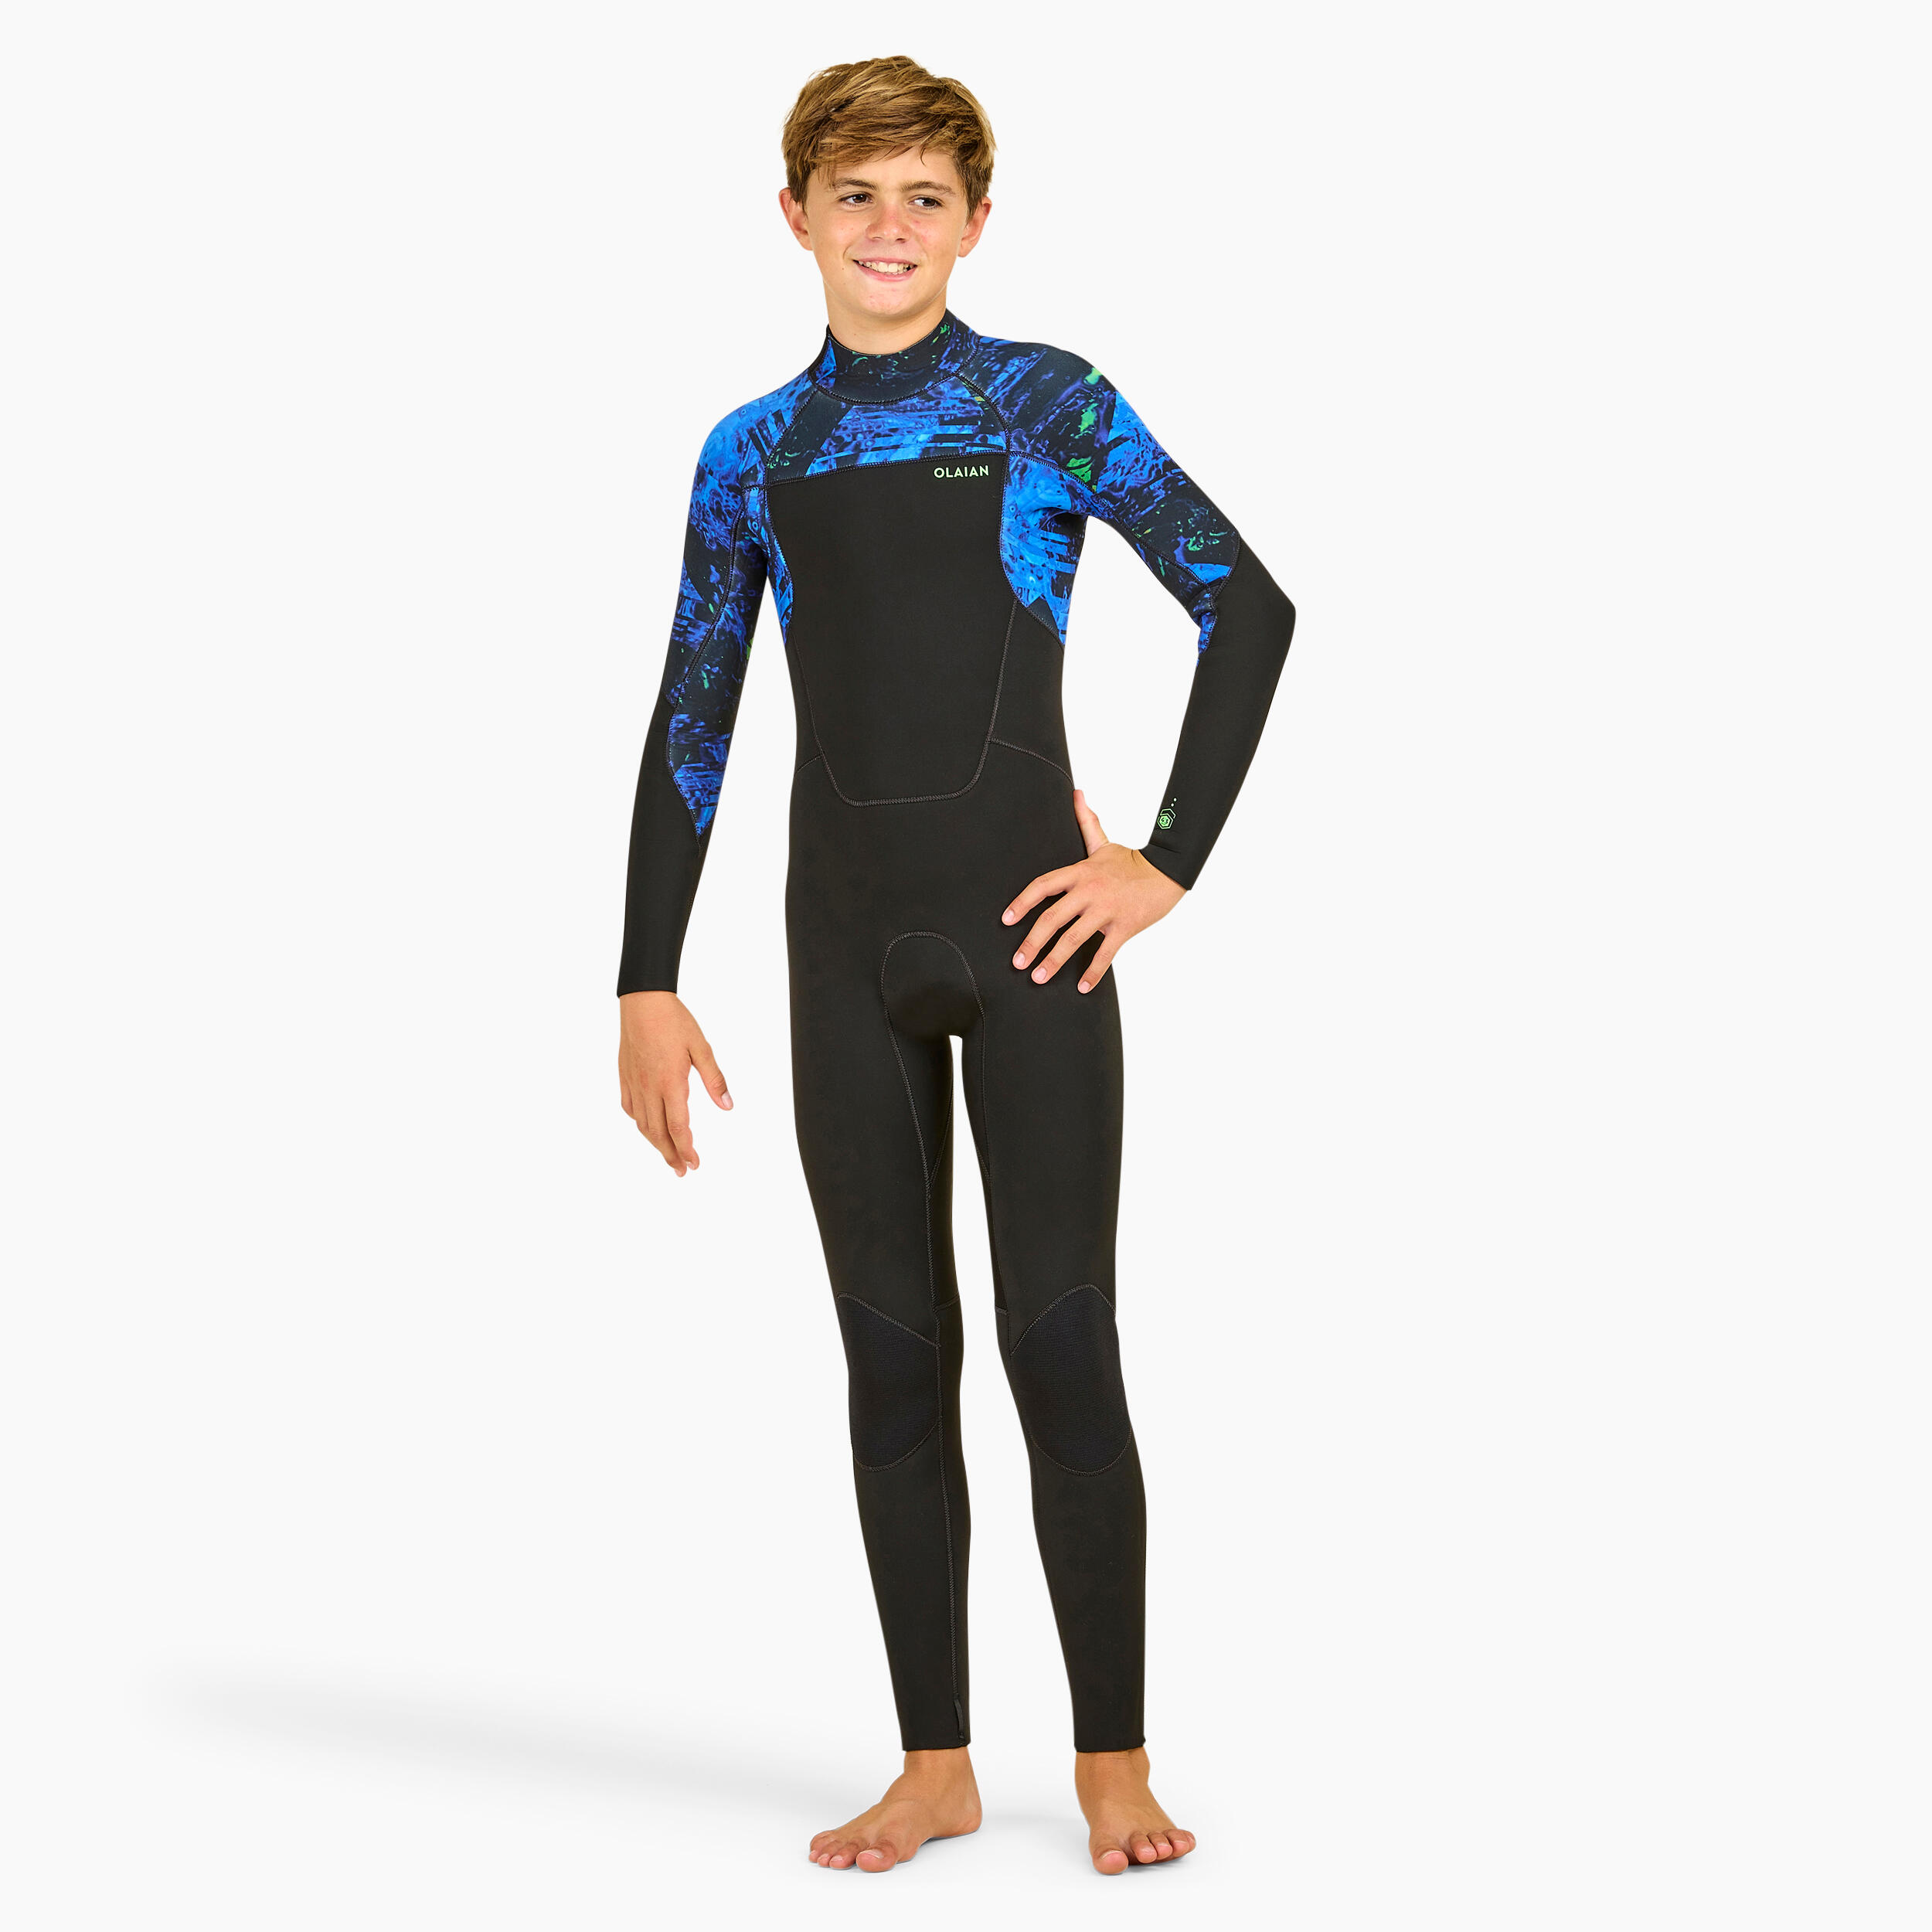 OLAIAN BOY'S SURFING WETSUIT 500 4/3 MM VORTEX BLACK